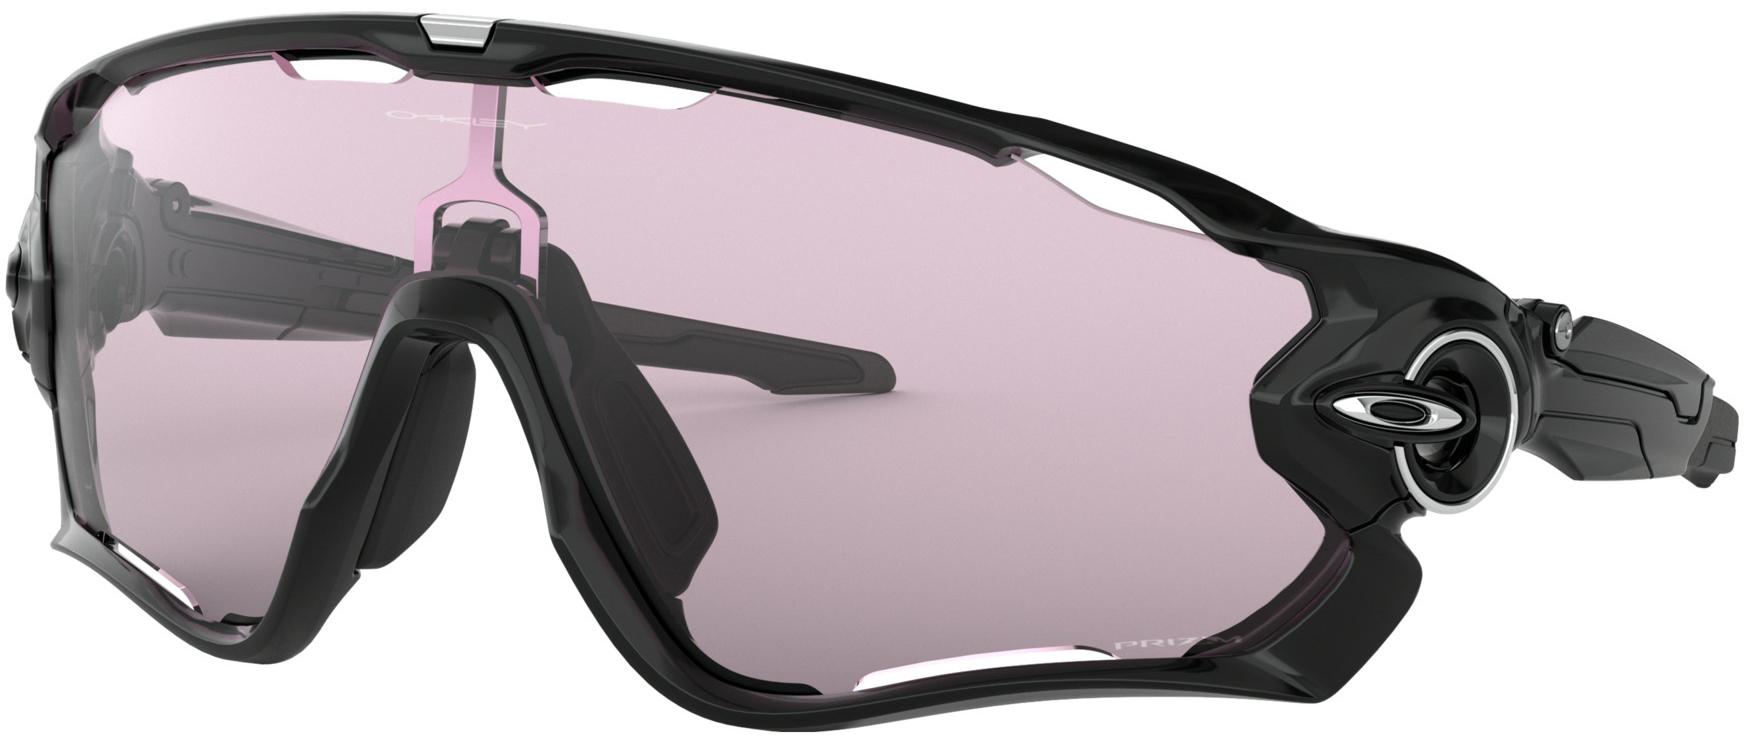 Oakley Jawbreaker Sunglasses - Lowlight Lens - Polished Black